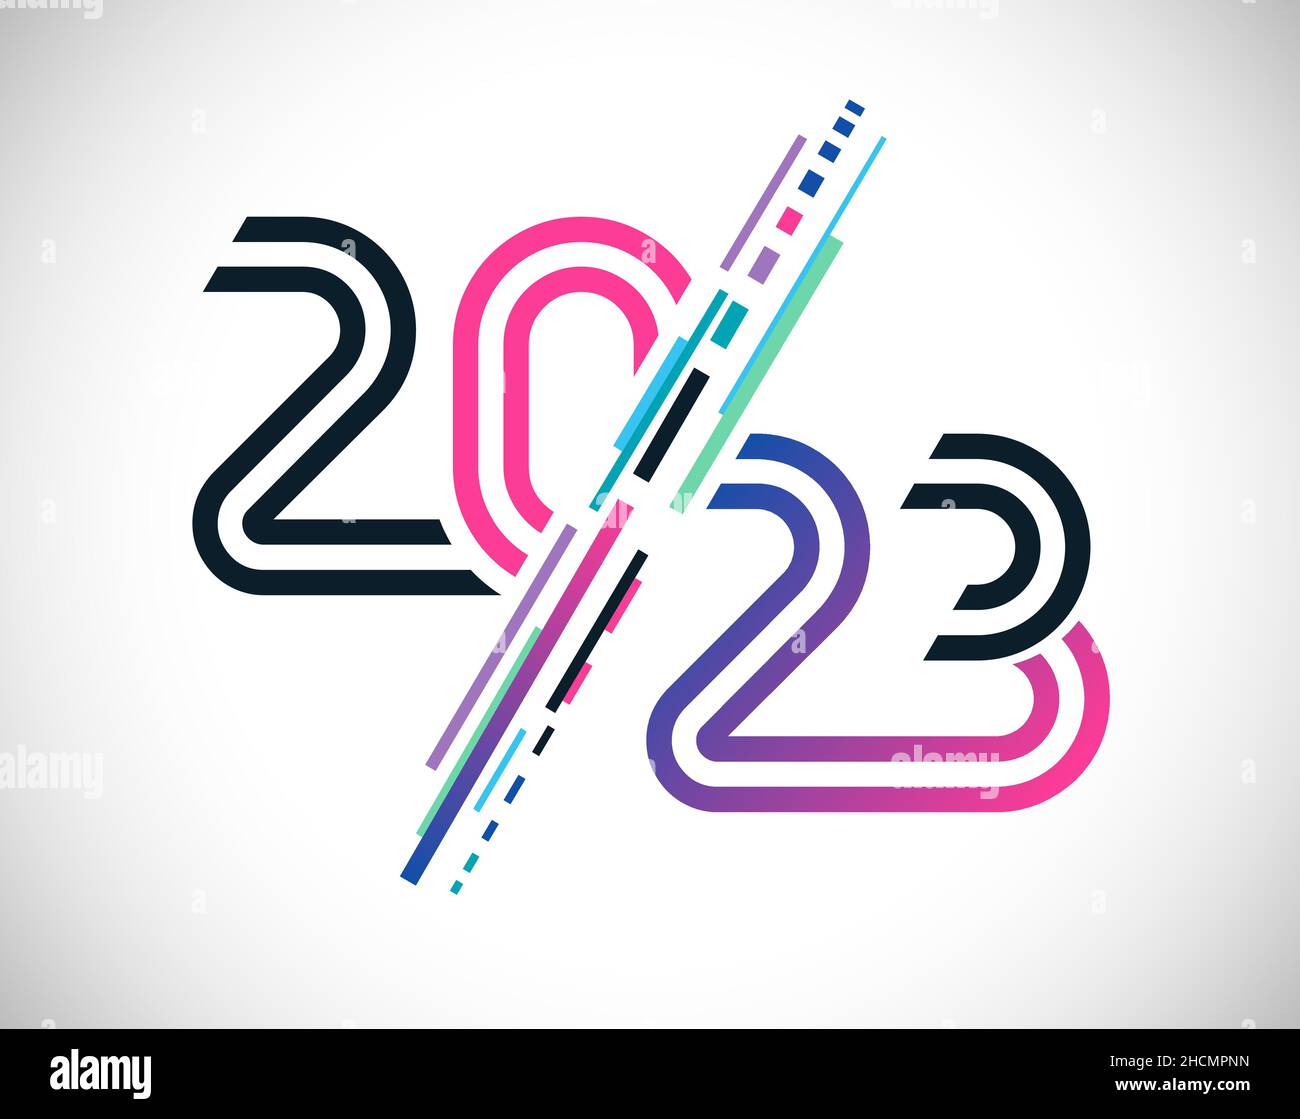 Une bonne année 2023 félicitations.Concept de logotype créatif.Lignes colorées, style artistique dynamique.Couleurs rose, bleu et noir.Graphique abstrait isolé Illustration de Vecteur